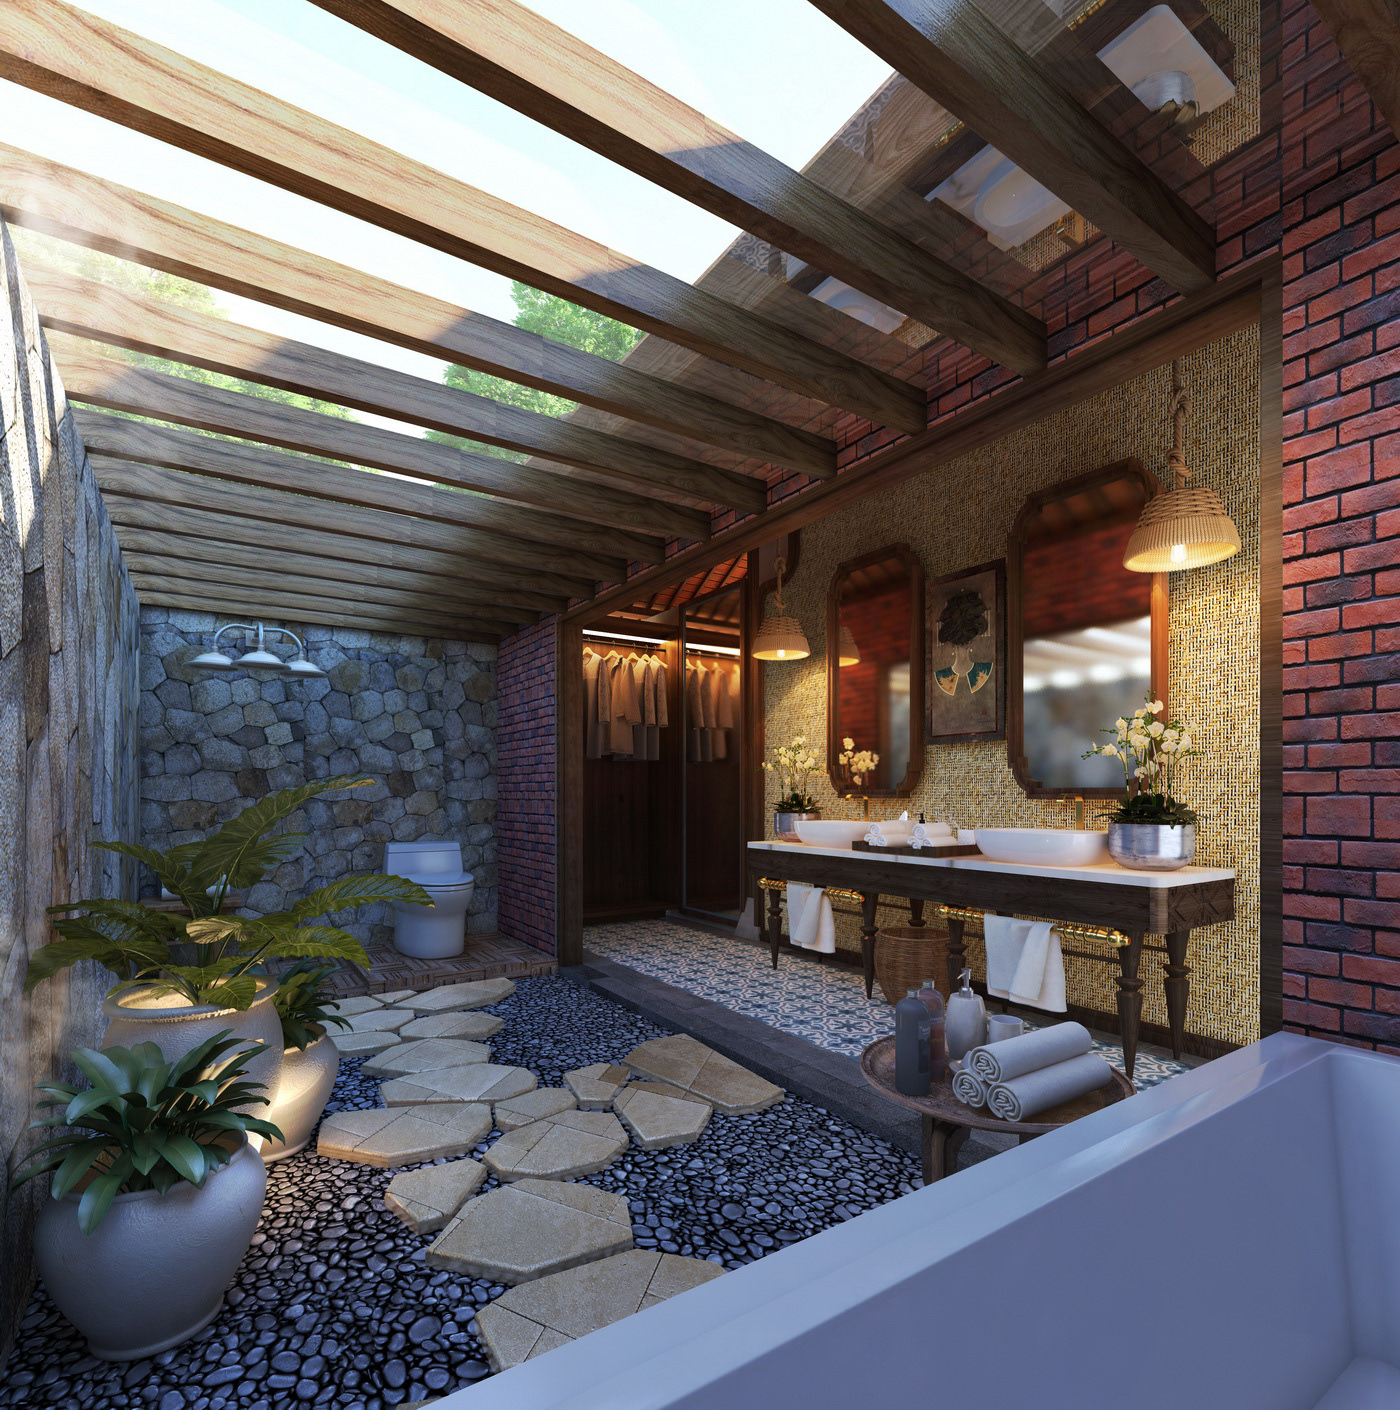 renderbox 3D APARTENET architecturte house Interior Render rendering Villa visualization